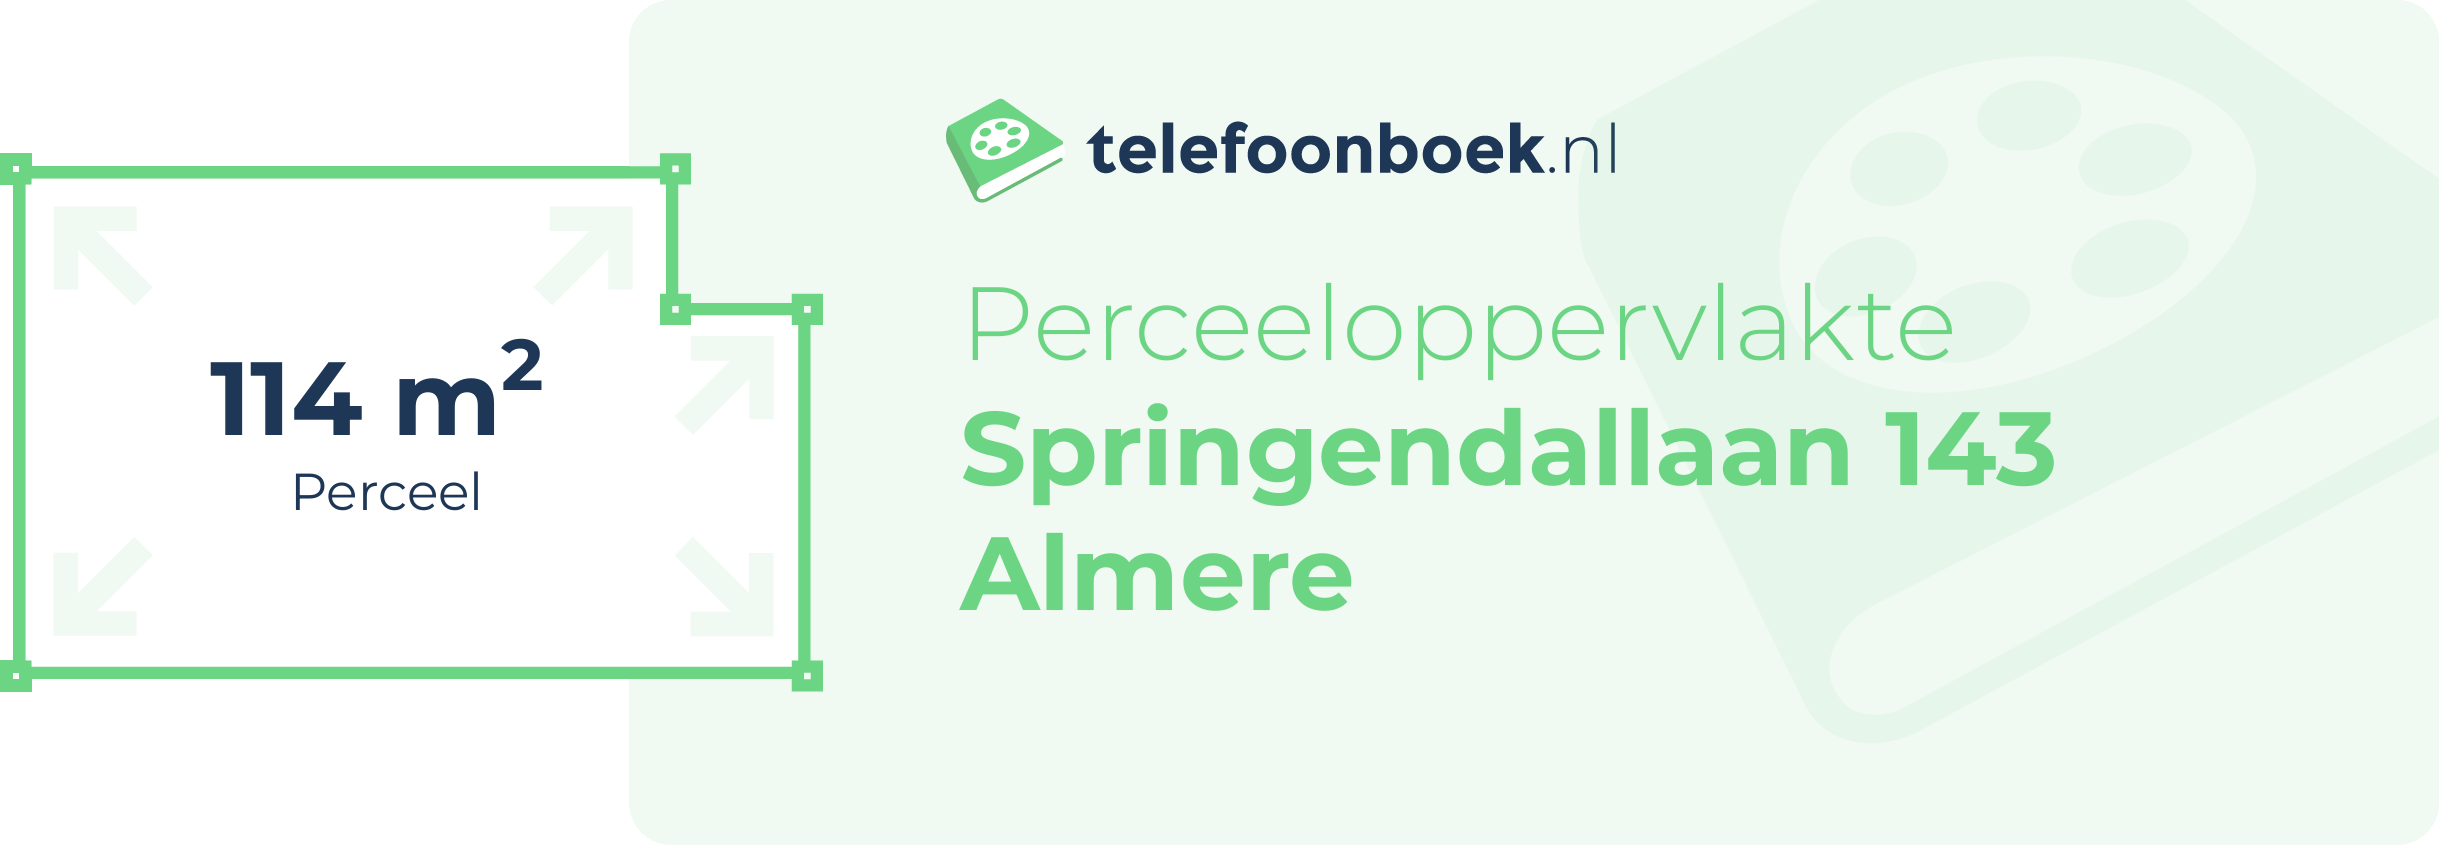 Perceeloppervlakte Springendallaan 143 Almere